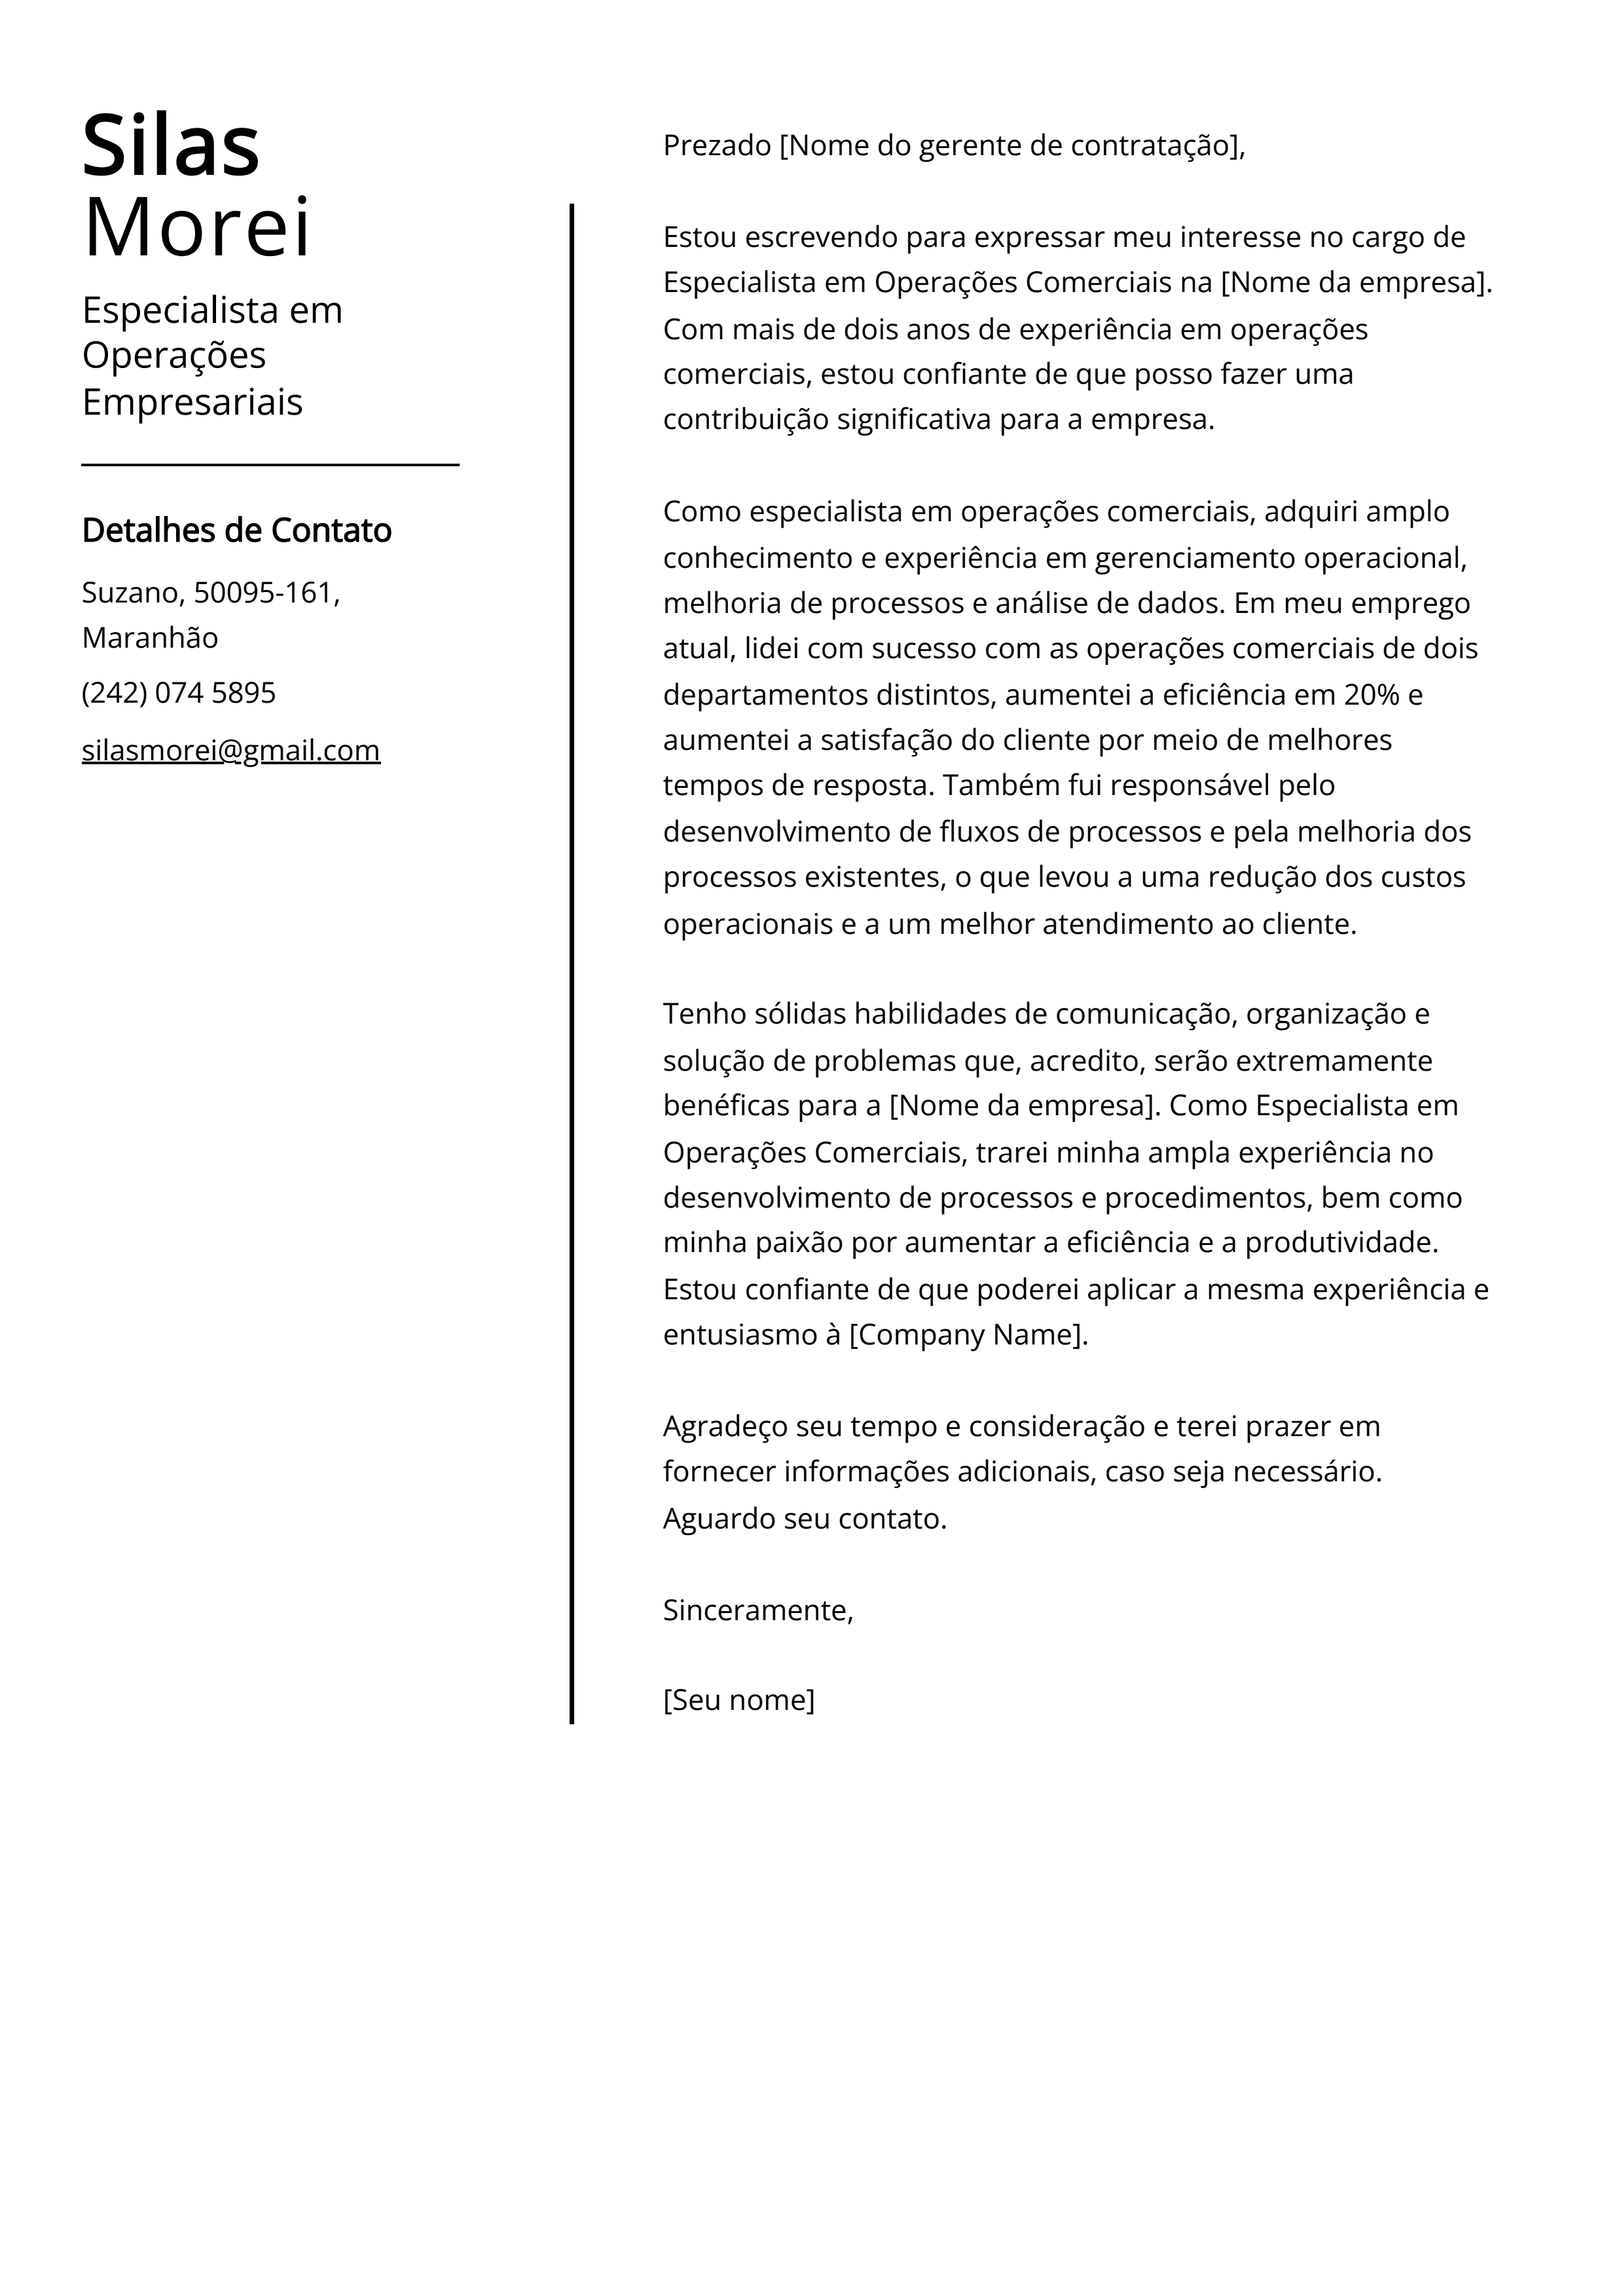 Exemplo de Carta de Apresentação de Especialista em Operações Empresariais